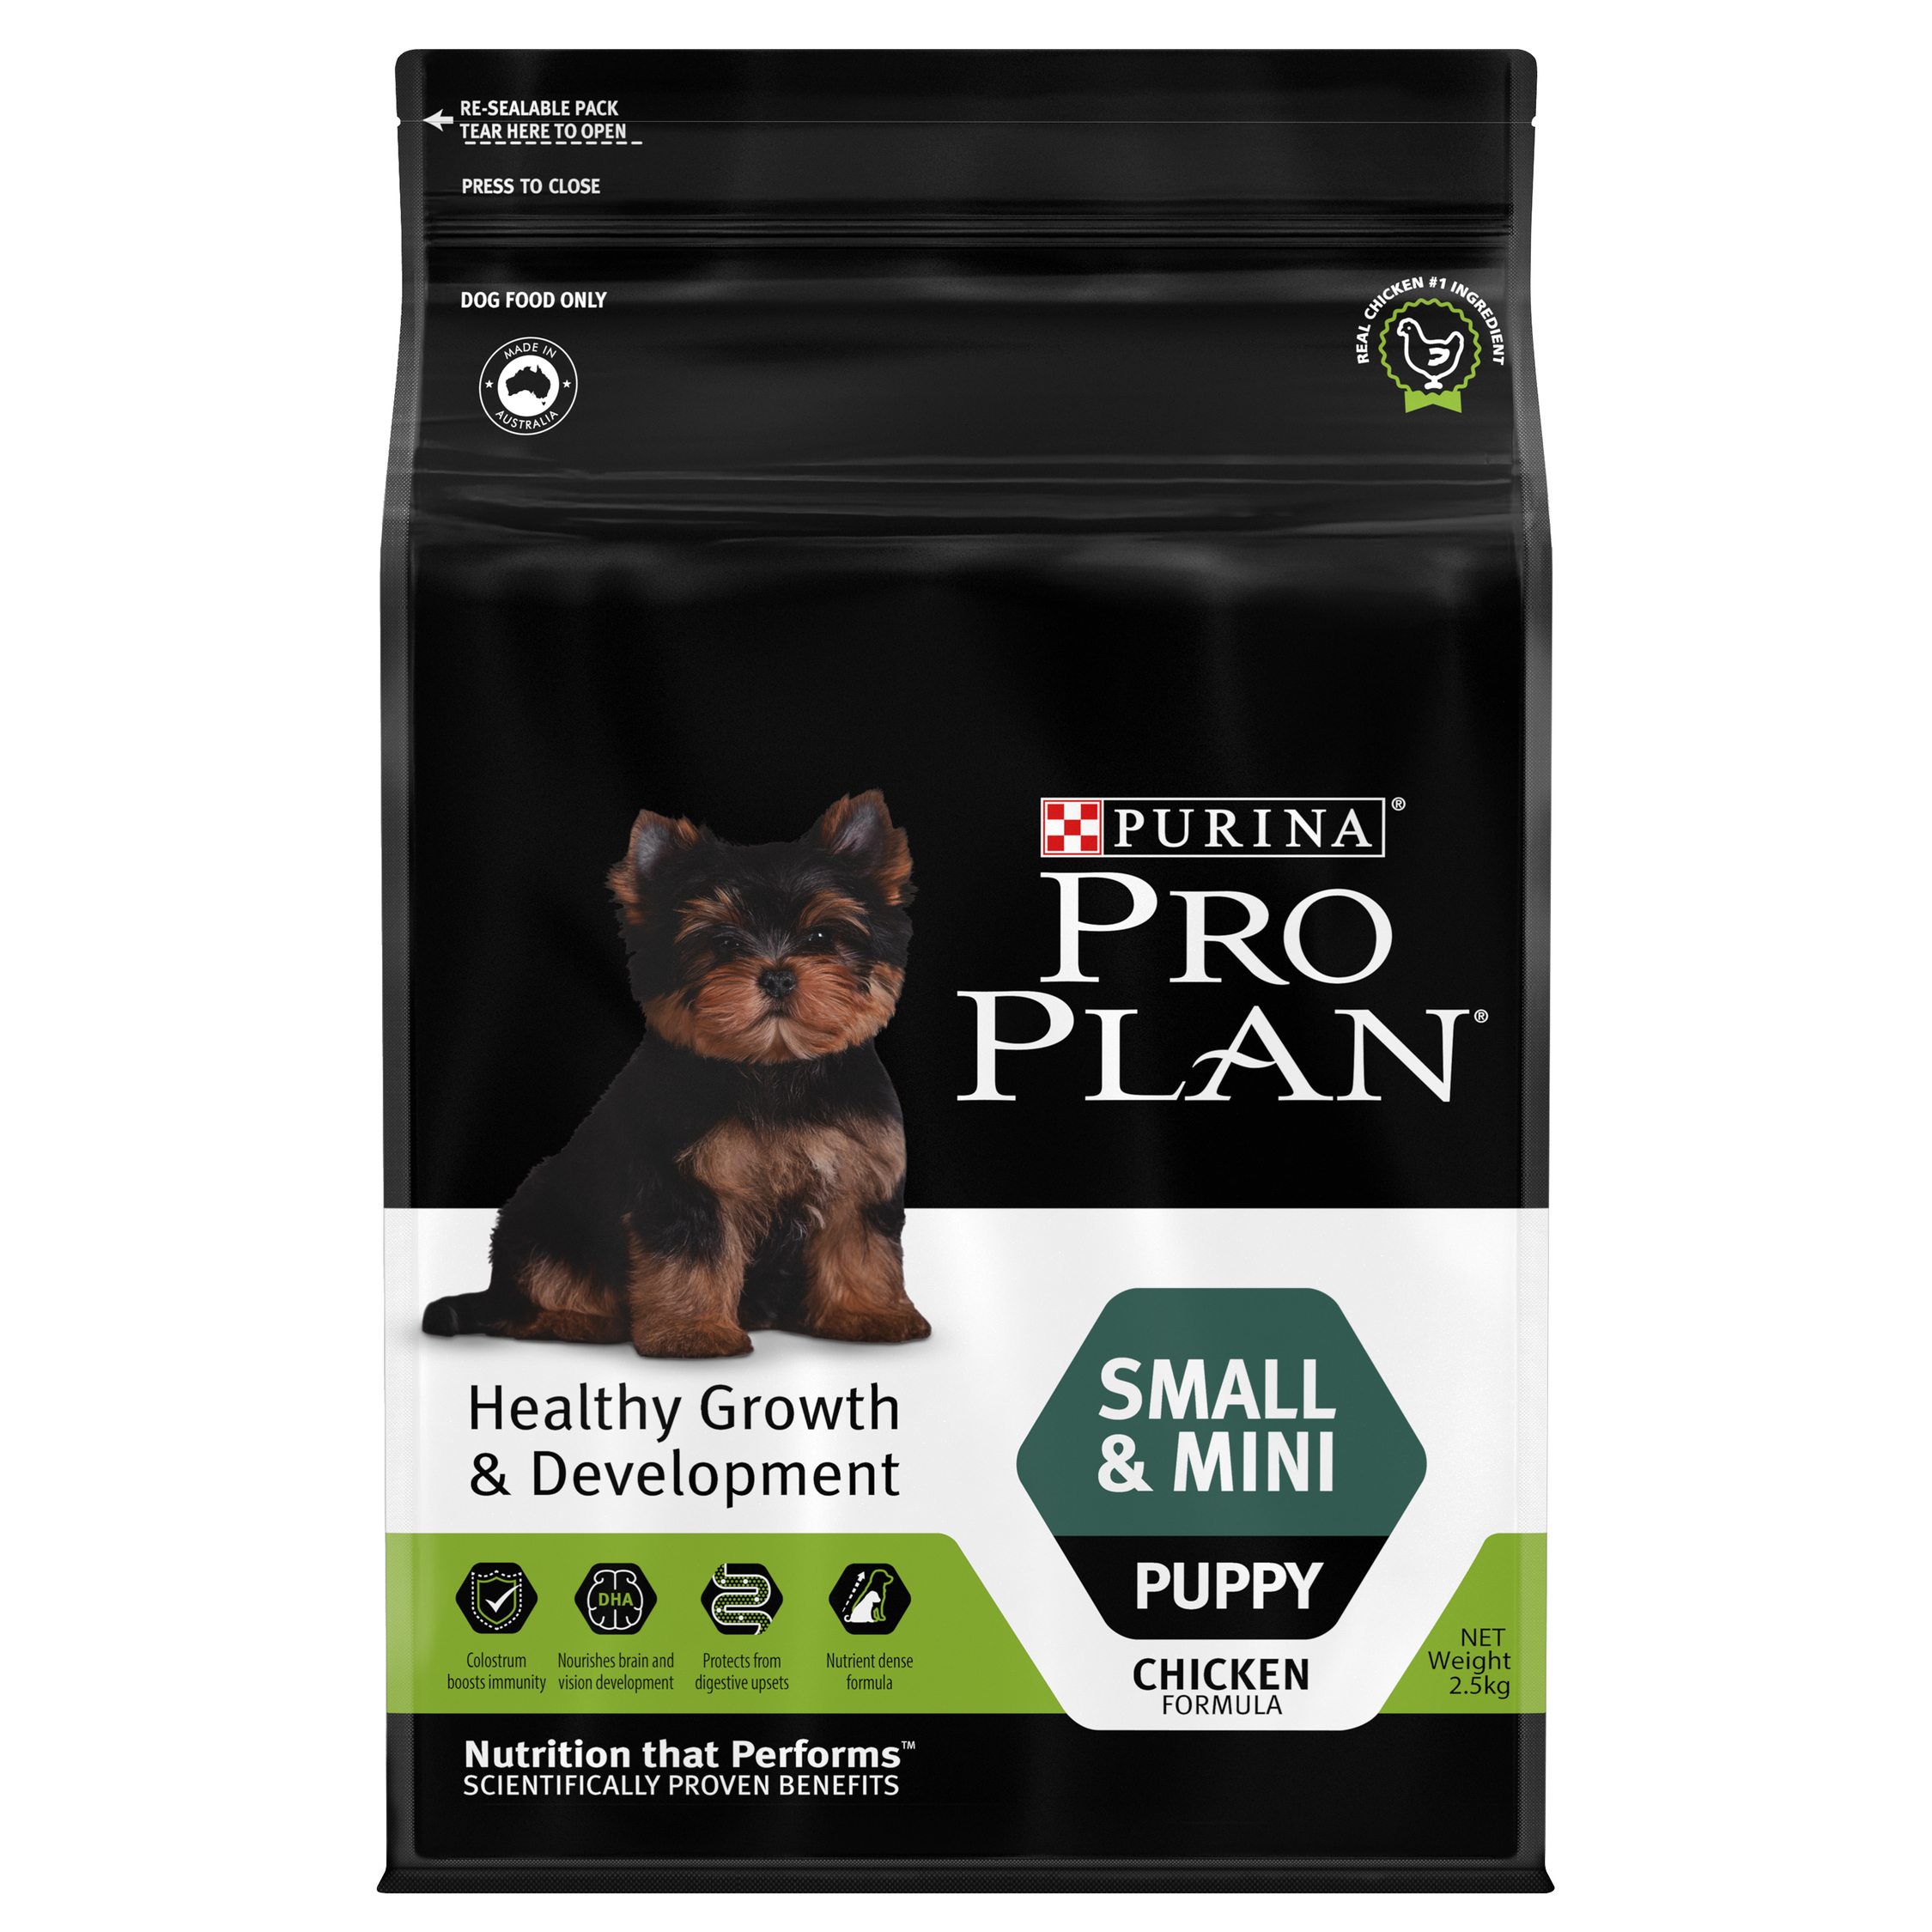 PRO PLAN® SMALL PUPPY อาหารลูกสุนัขพันธุ์เล็ก สำหรับลูกสุนัขหลังหย่านม–1 ปี